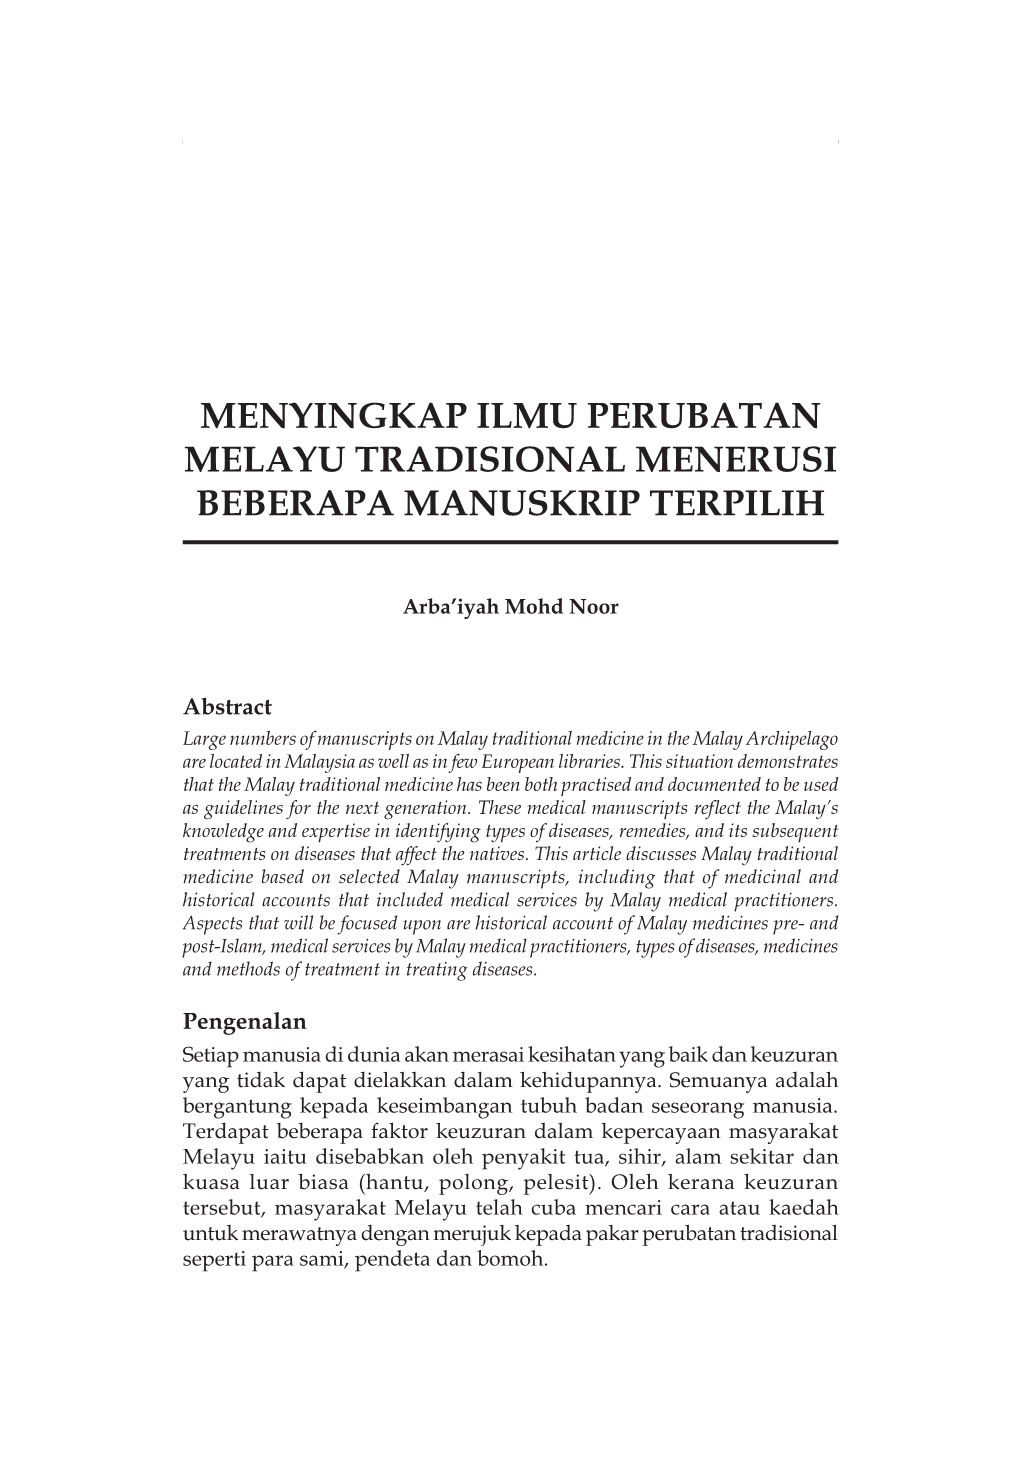 Menyingkap Ilmu Perubatan Melayu Tradisional Menerusi Beberapa Manuskrip Terpilih